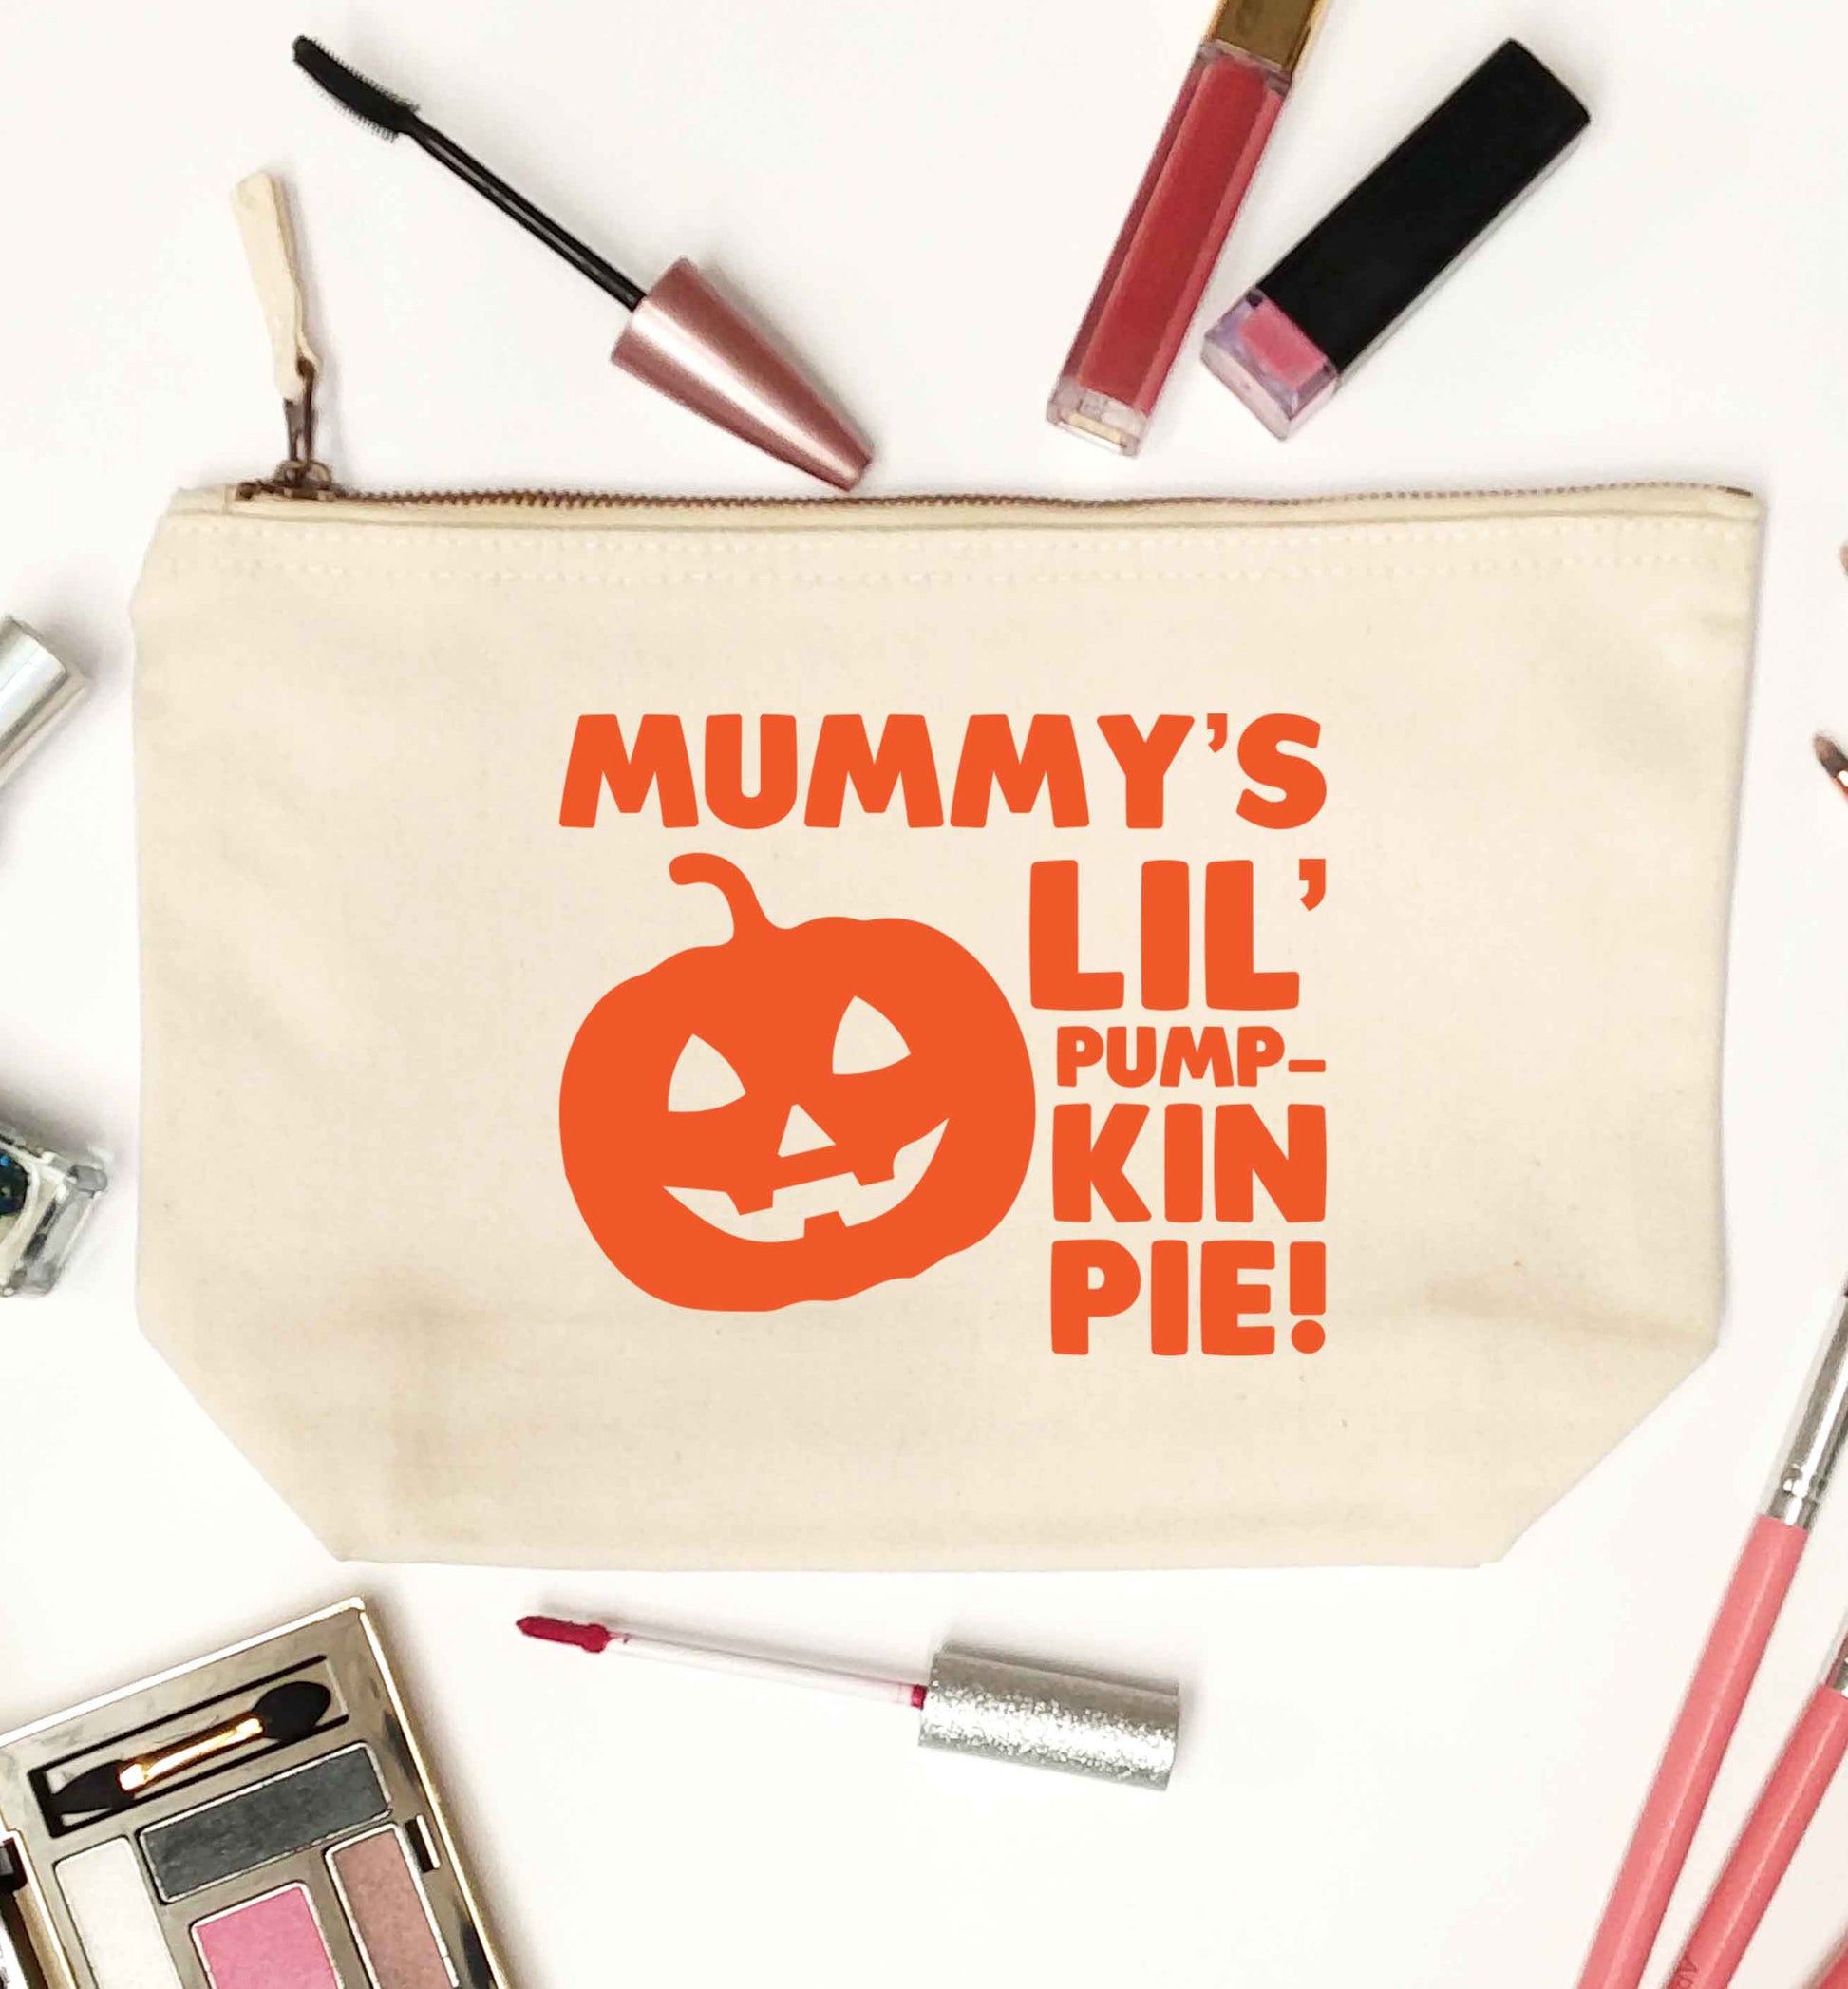 Mummy's lil' pumpkin pie natural makeup bag